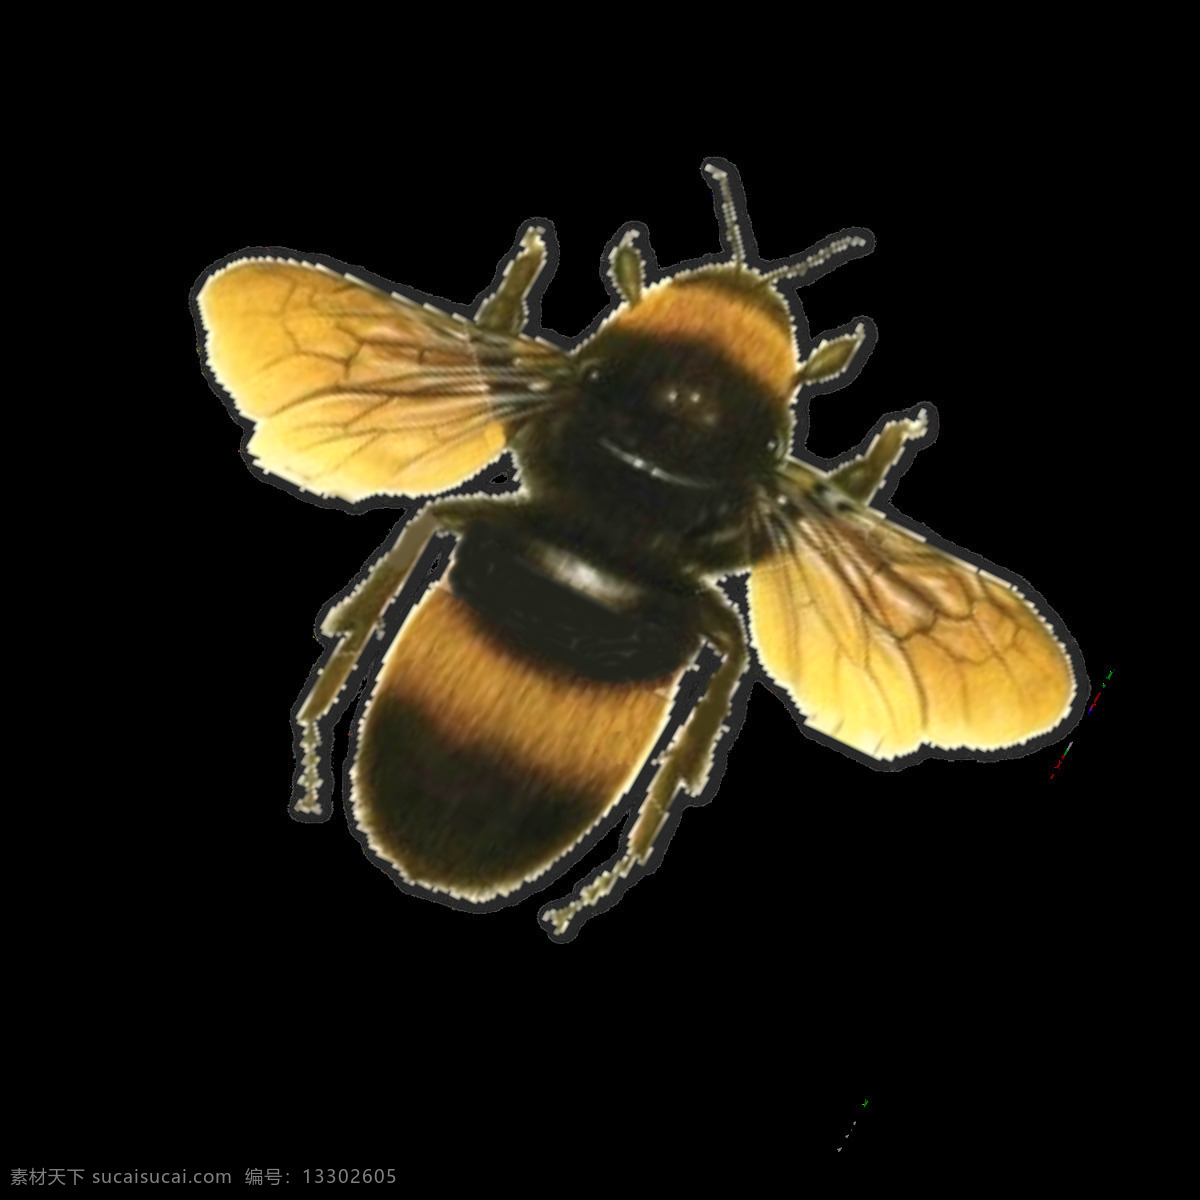 大 蜜蜂 免 抠 透明 图 层 大蜜蜂图片 大全 大图 大蜜蜂 金蜜蜂 小 卡通 蜜蜂照片 蜂蜜元素 蜜蜂元素 蜜蜂素材 蜜蜂海报素材 蜜蜂广告图片